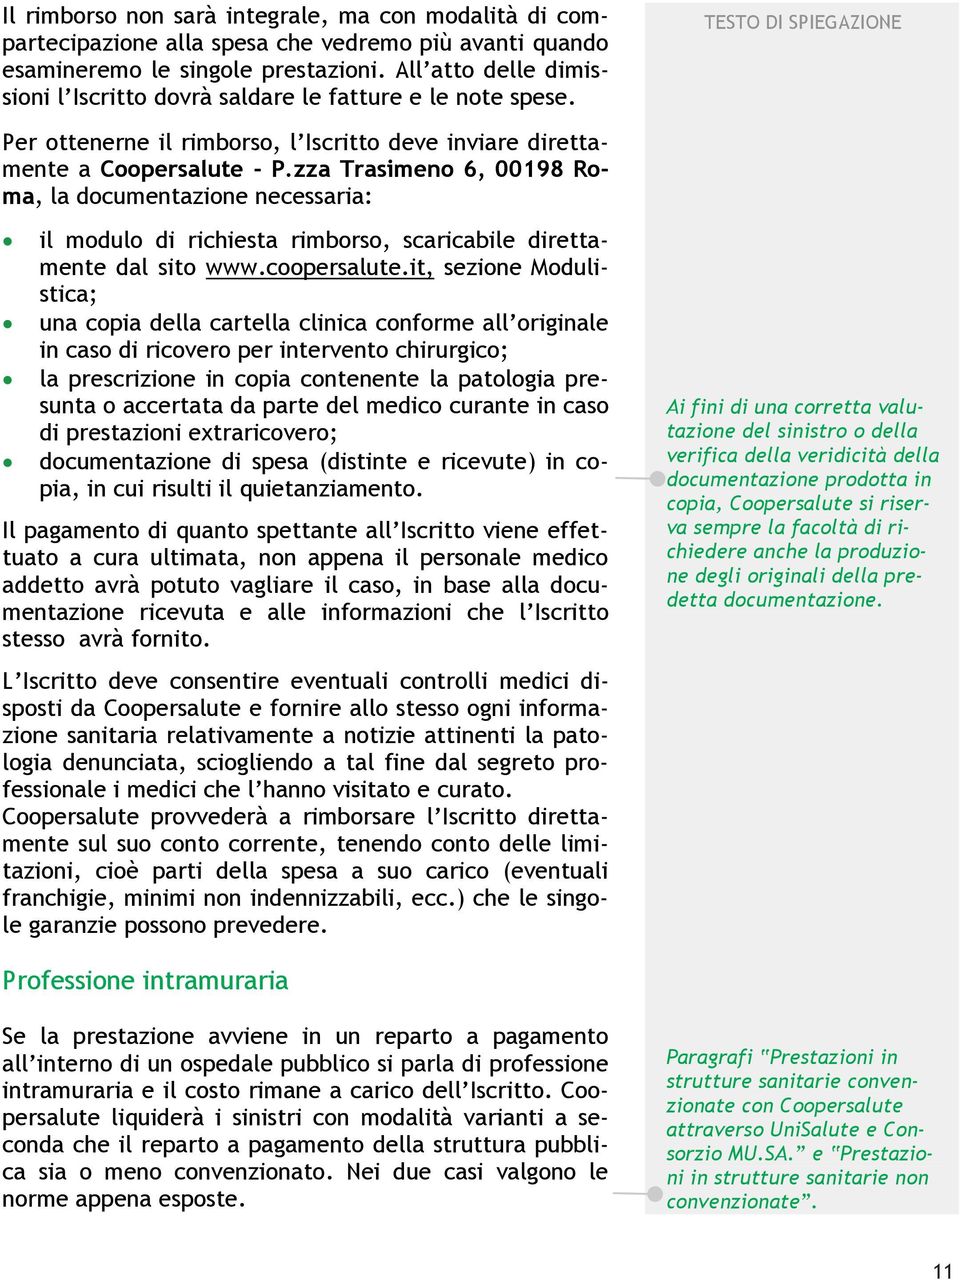 zza Trasimeno 6, 00198 Roma, la documentazione necessaria: il modulo di richiesta rimborso, scaricabile direttamente dal sito www.coopersalute.